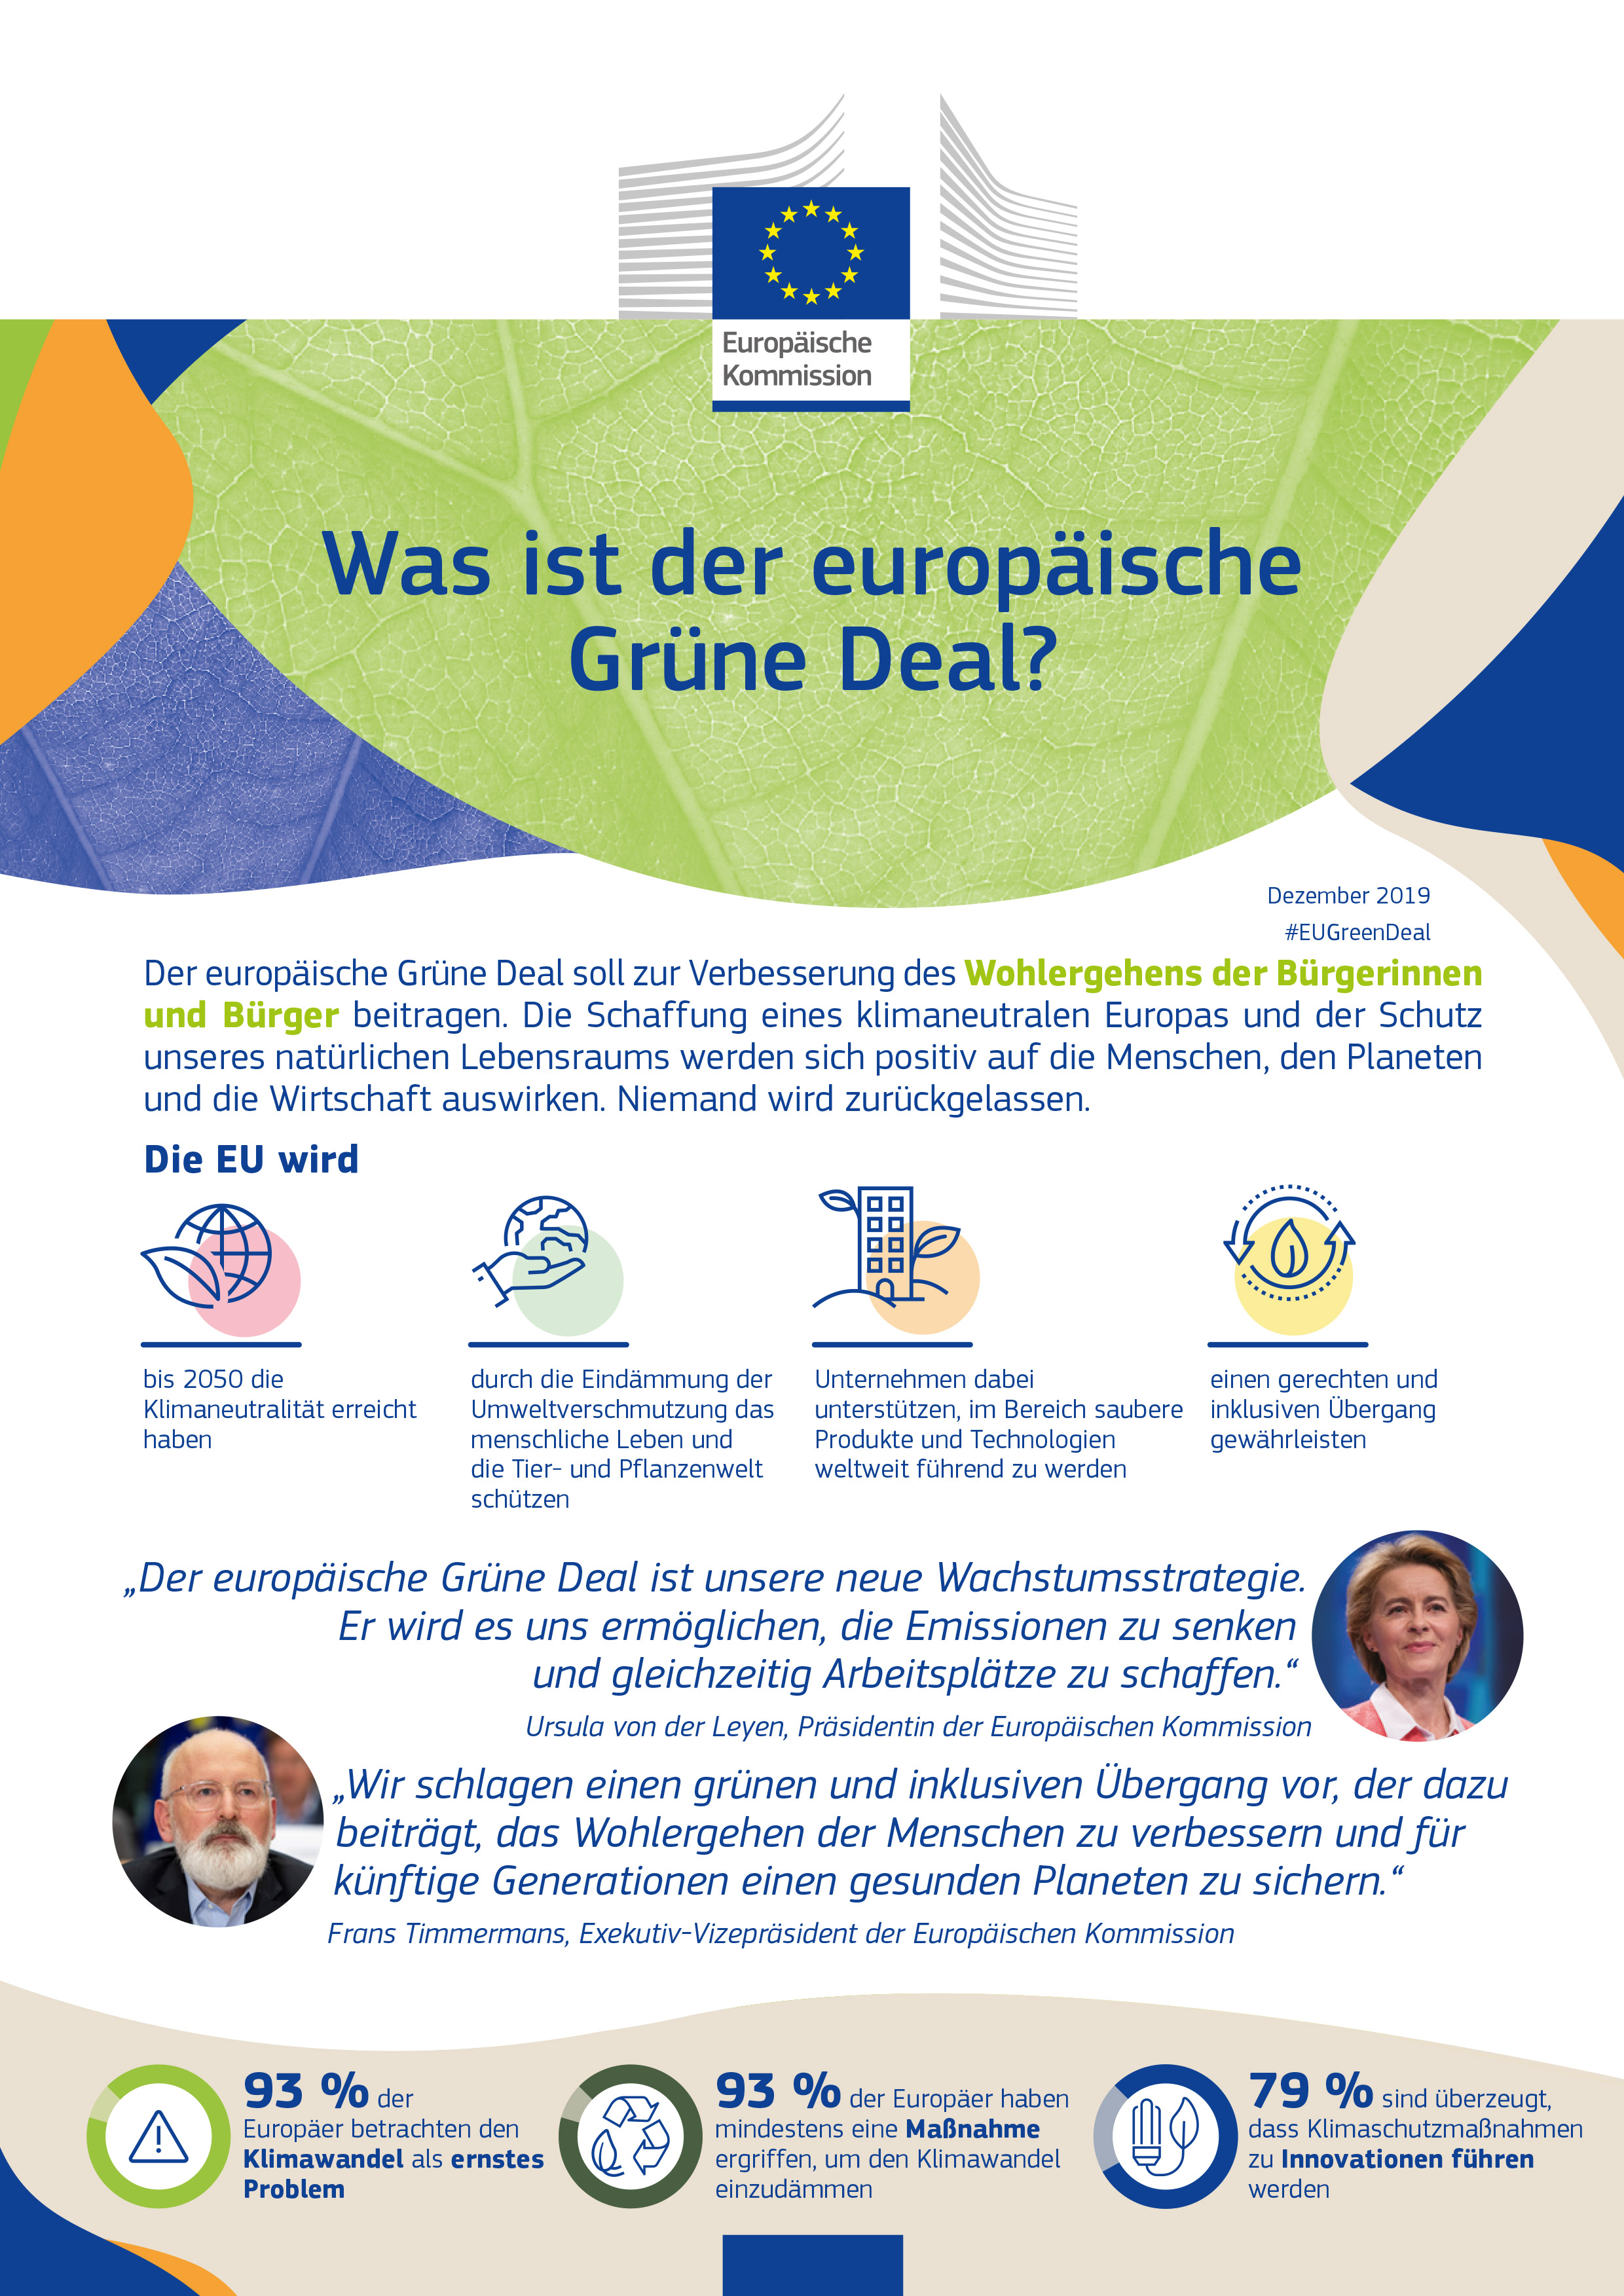 Was ist der europäische Grüne Deal?